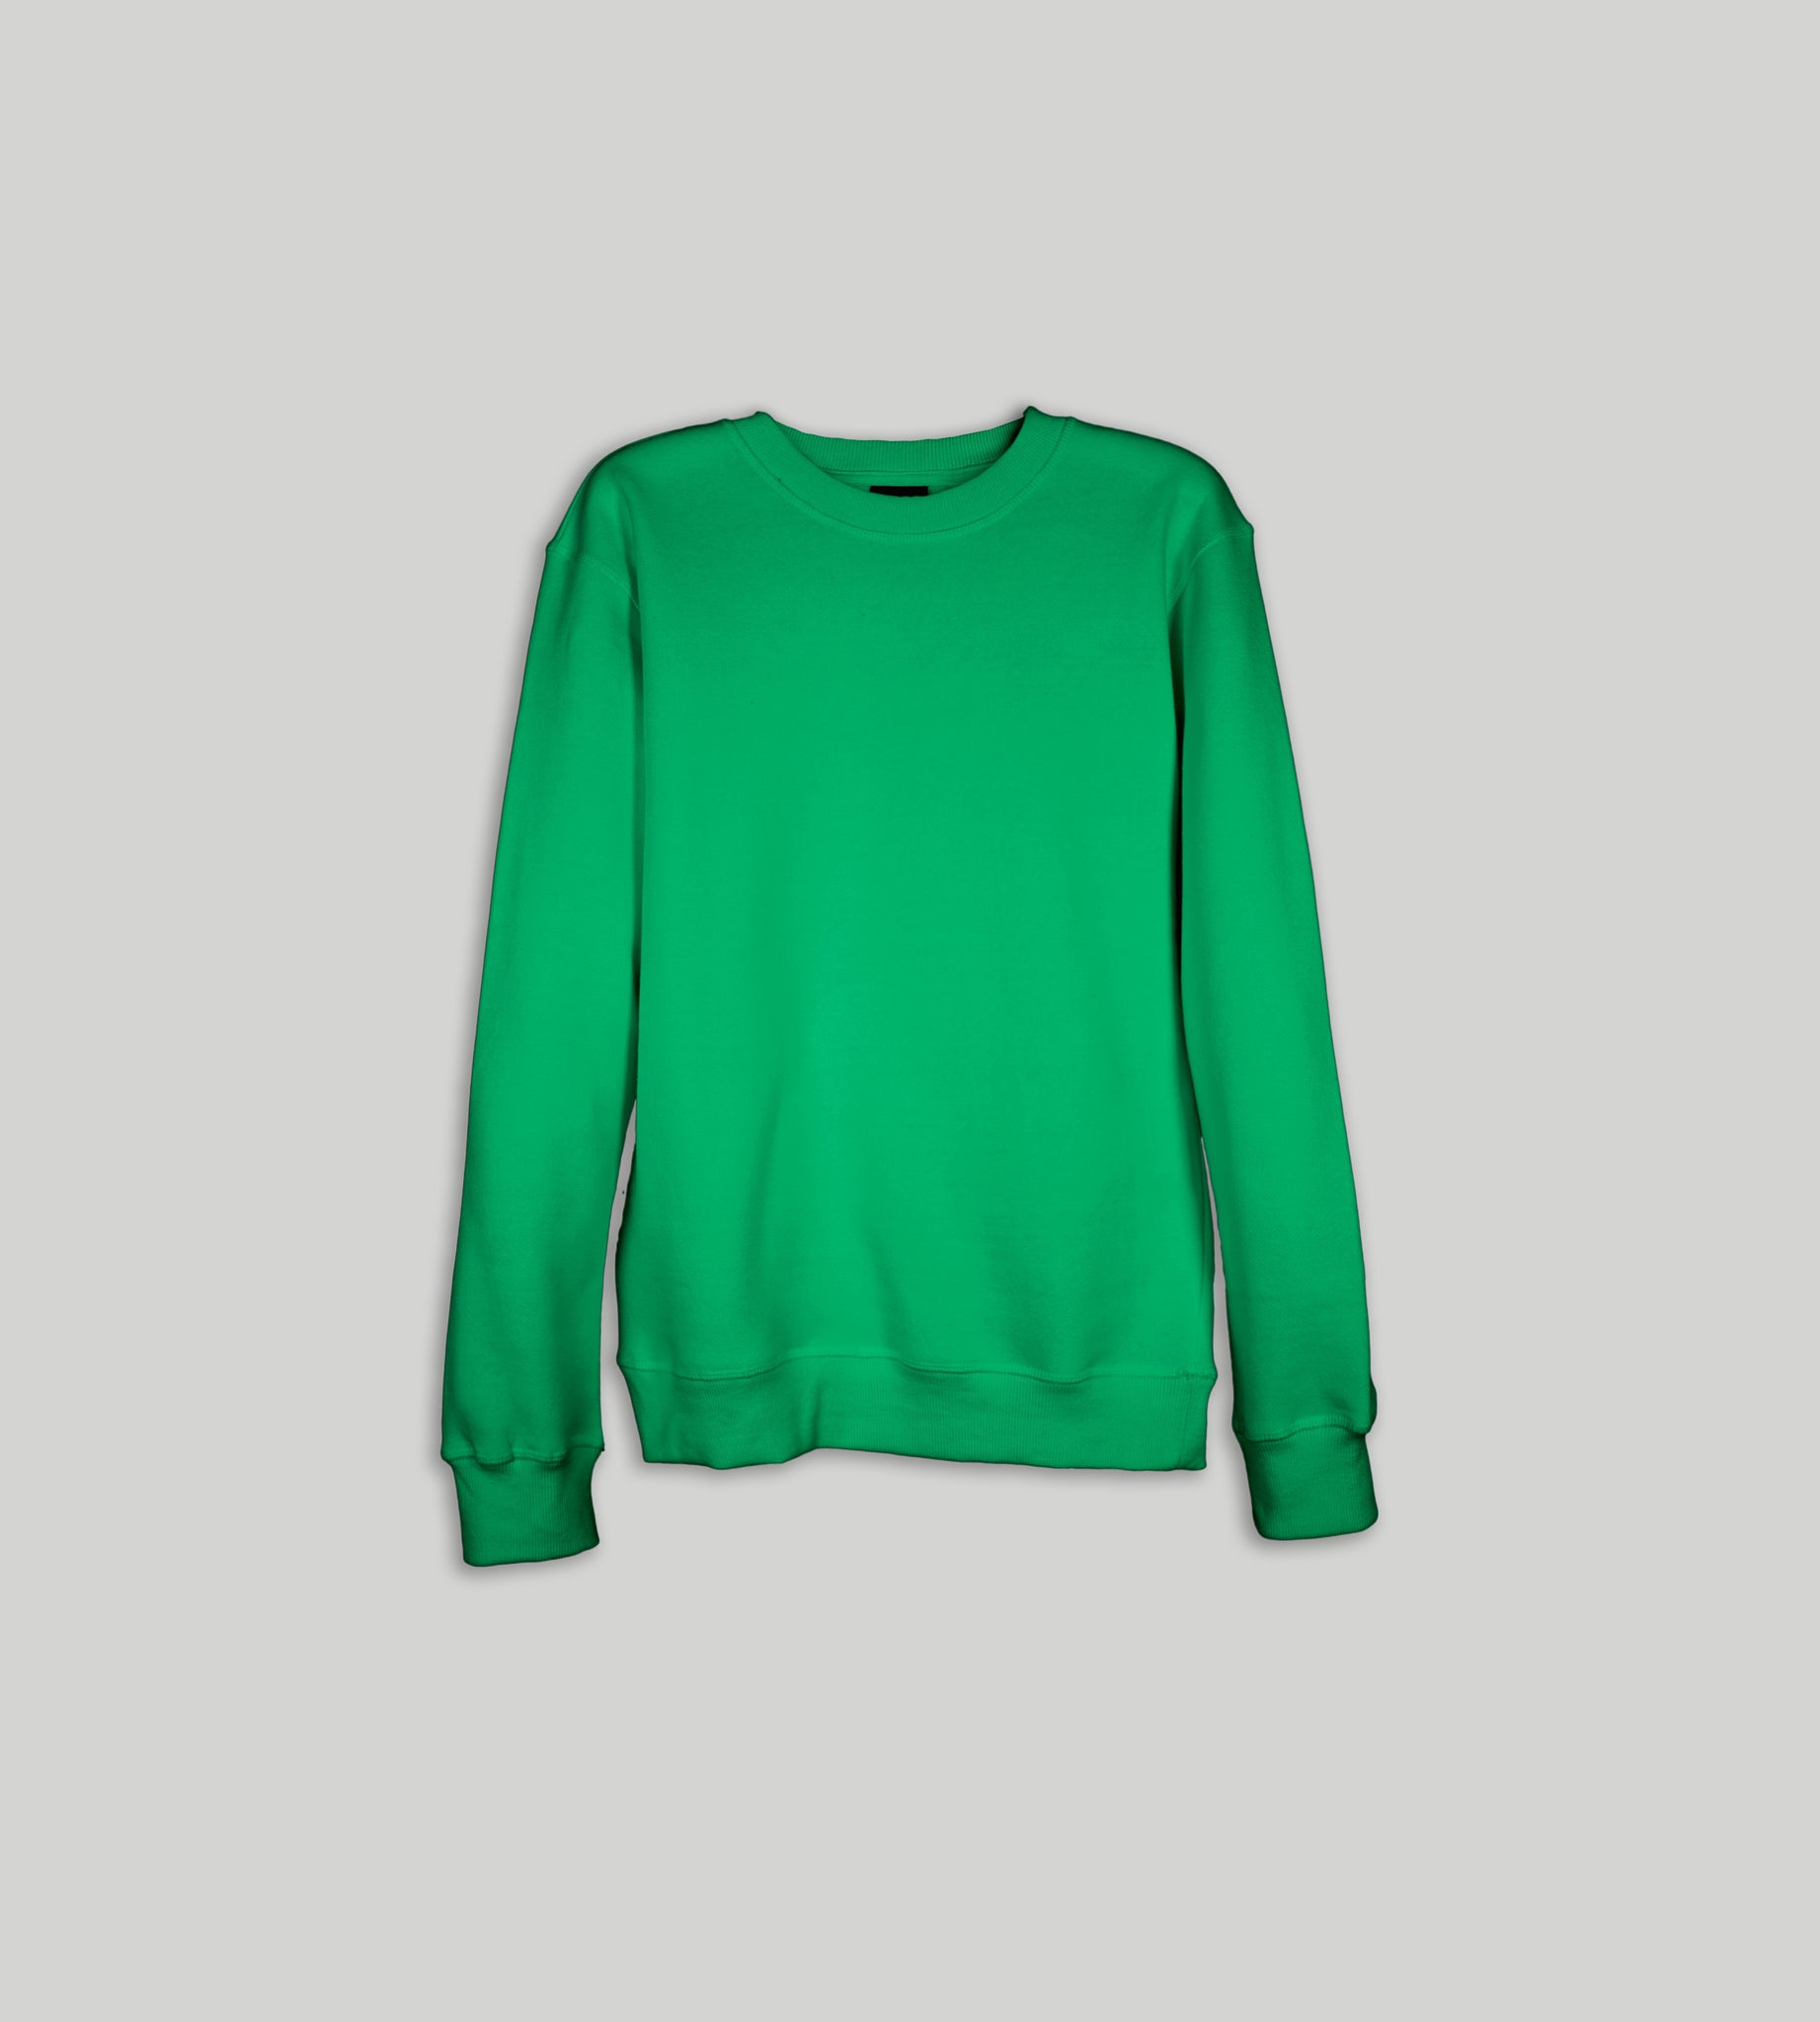 Get Cozy with Stylish Fleece Sweatshirts